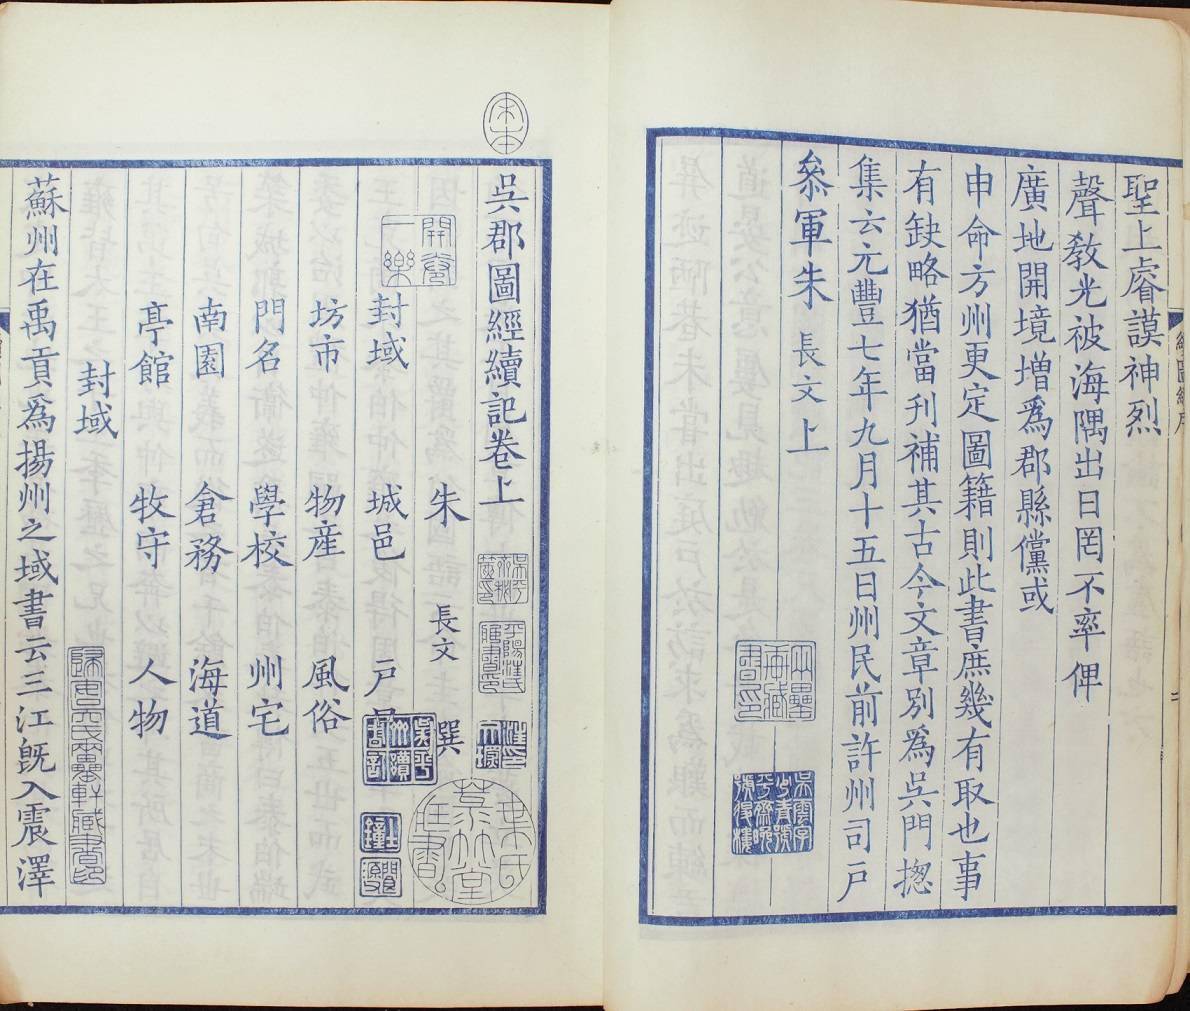 二十三种藏书中所见谭其骧先生的学术与交往 禹贡